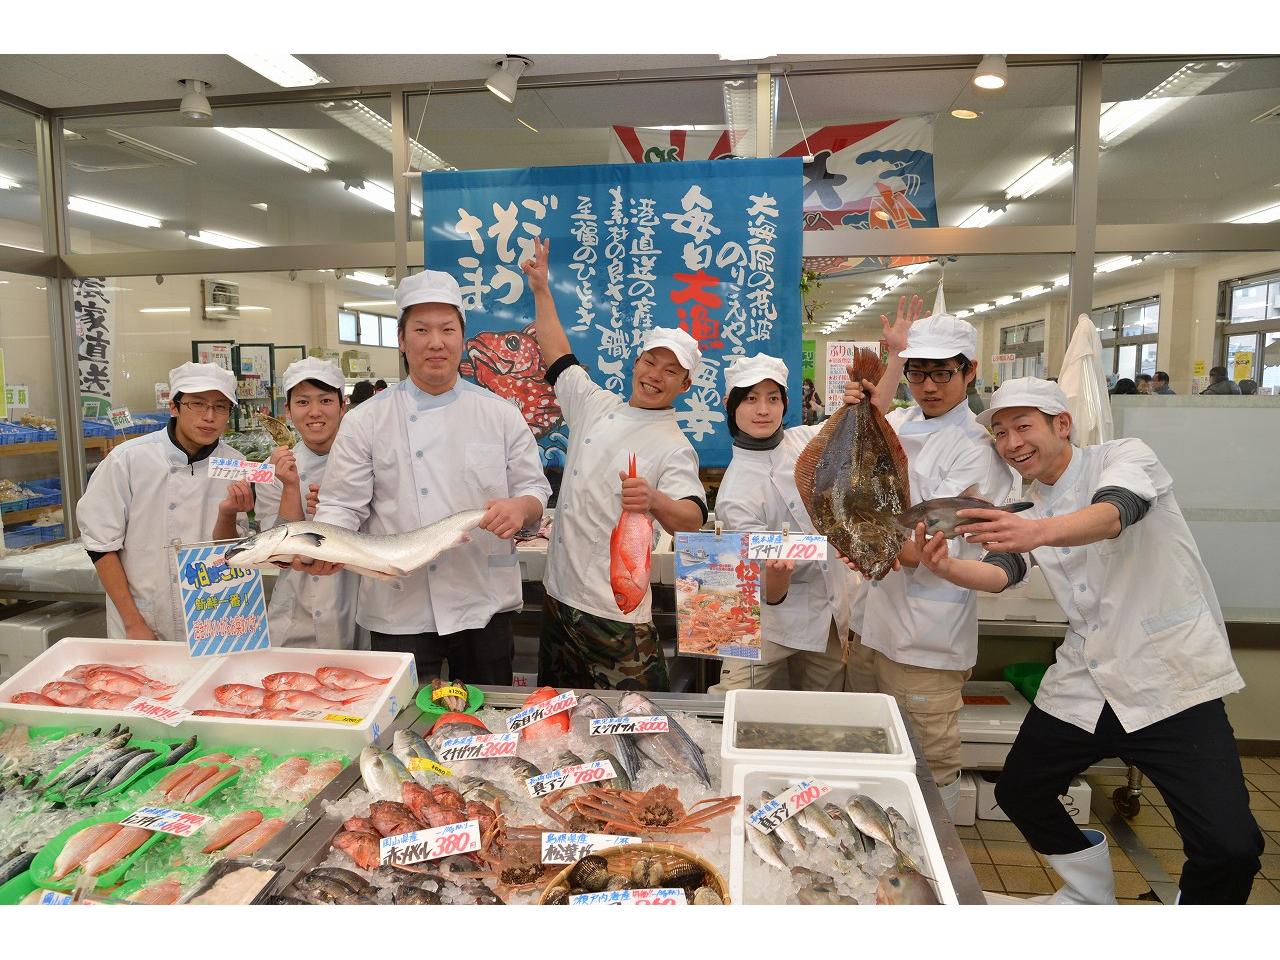 食品スーパー内での魚調理と接客業務（動画有り）